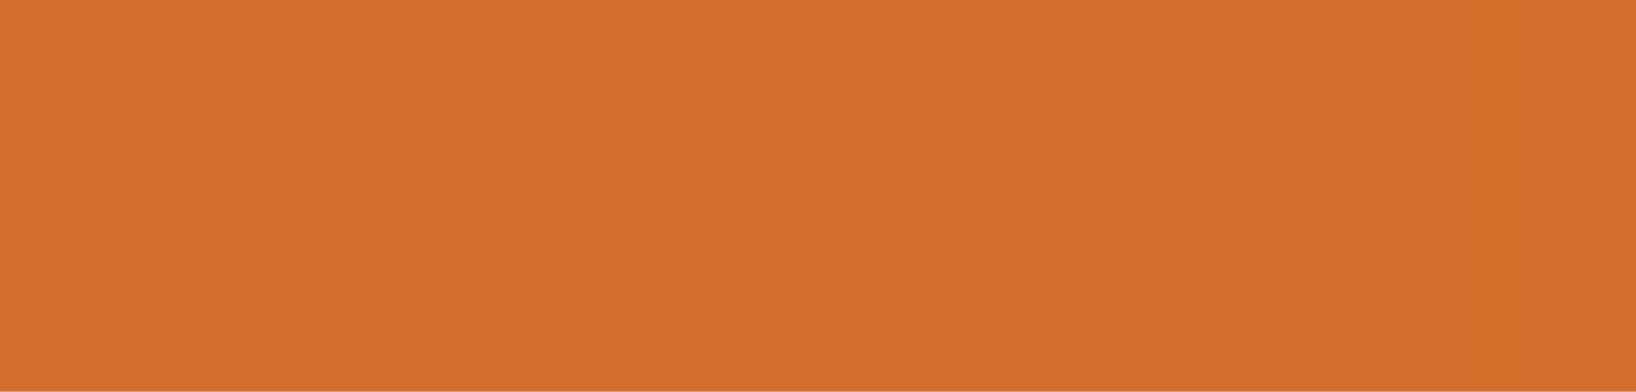 Tycjan/Pomarańcz Nr koloru 179